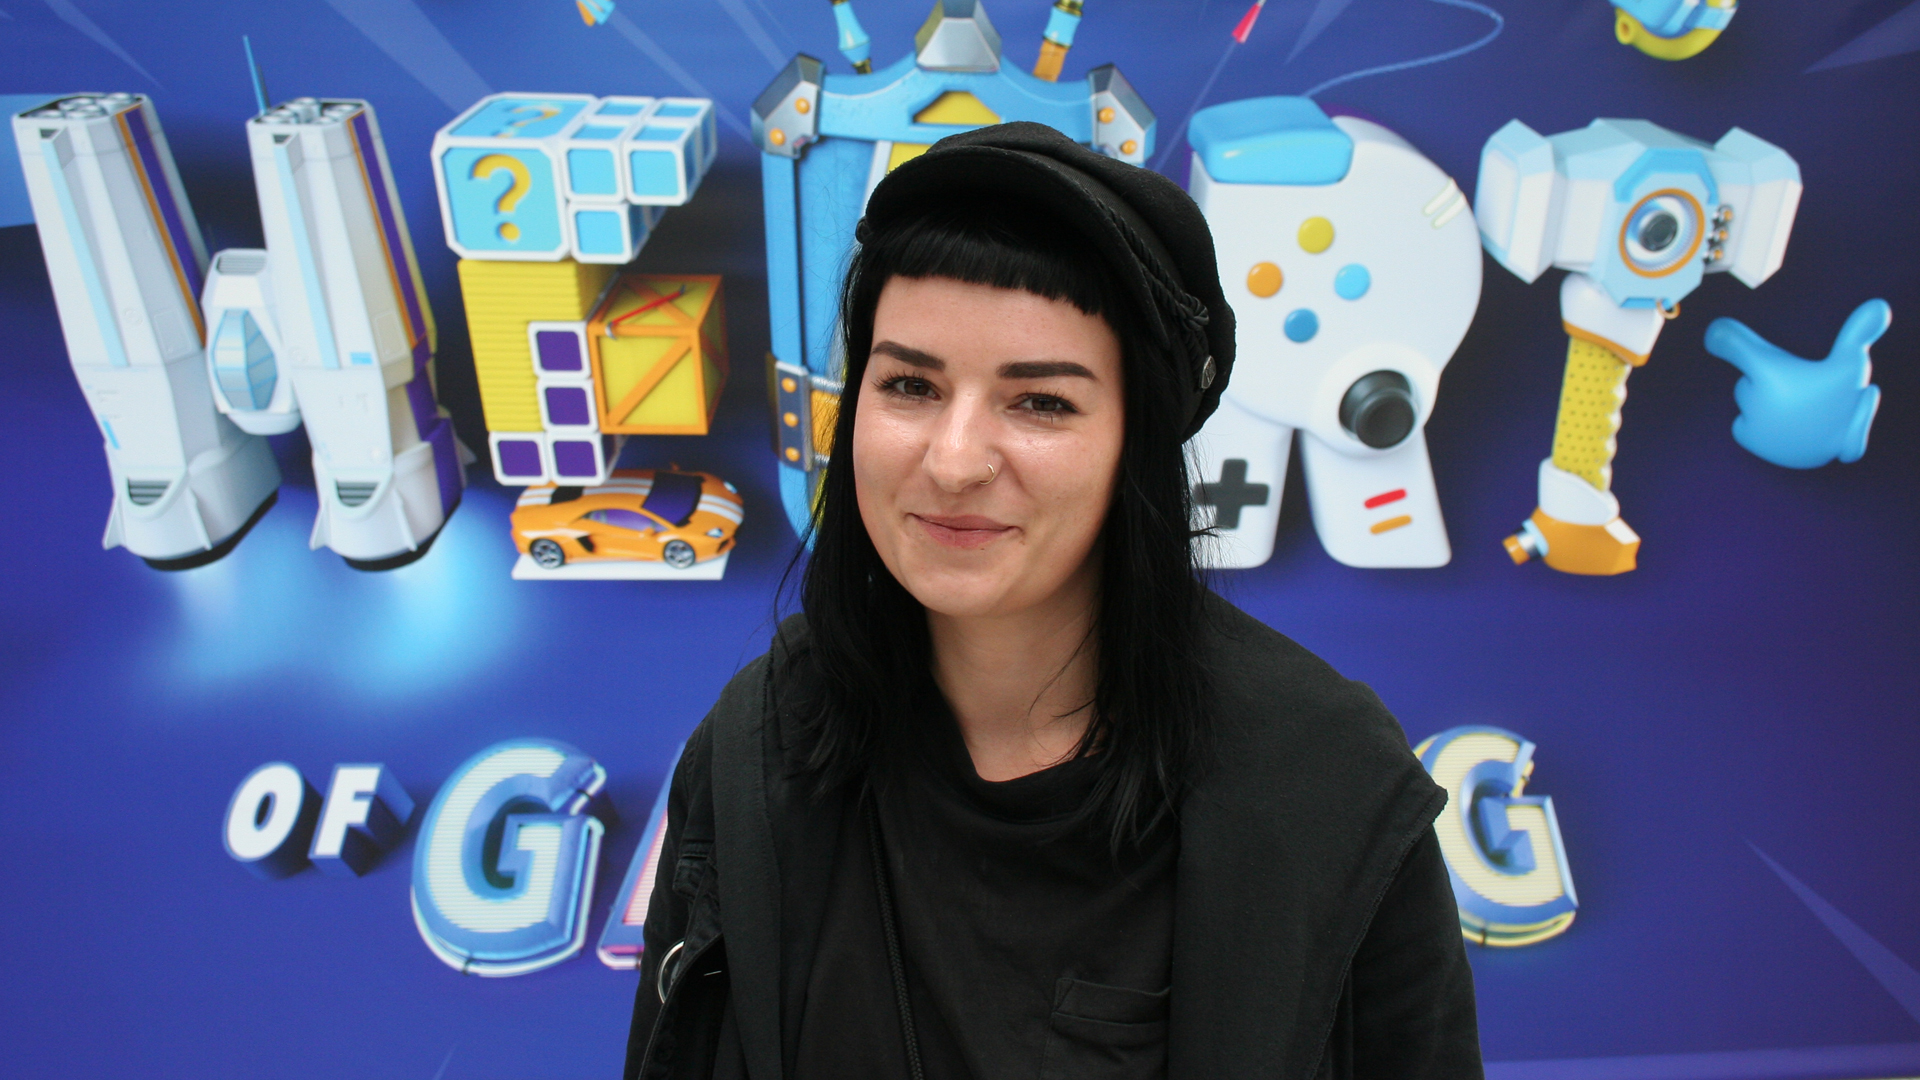 Valentina Birke ist verantwortlich für die Indie Arena Booth auf der Gamescom 2019. Bildrechte: WDR / Thomas Ruscher